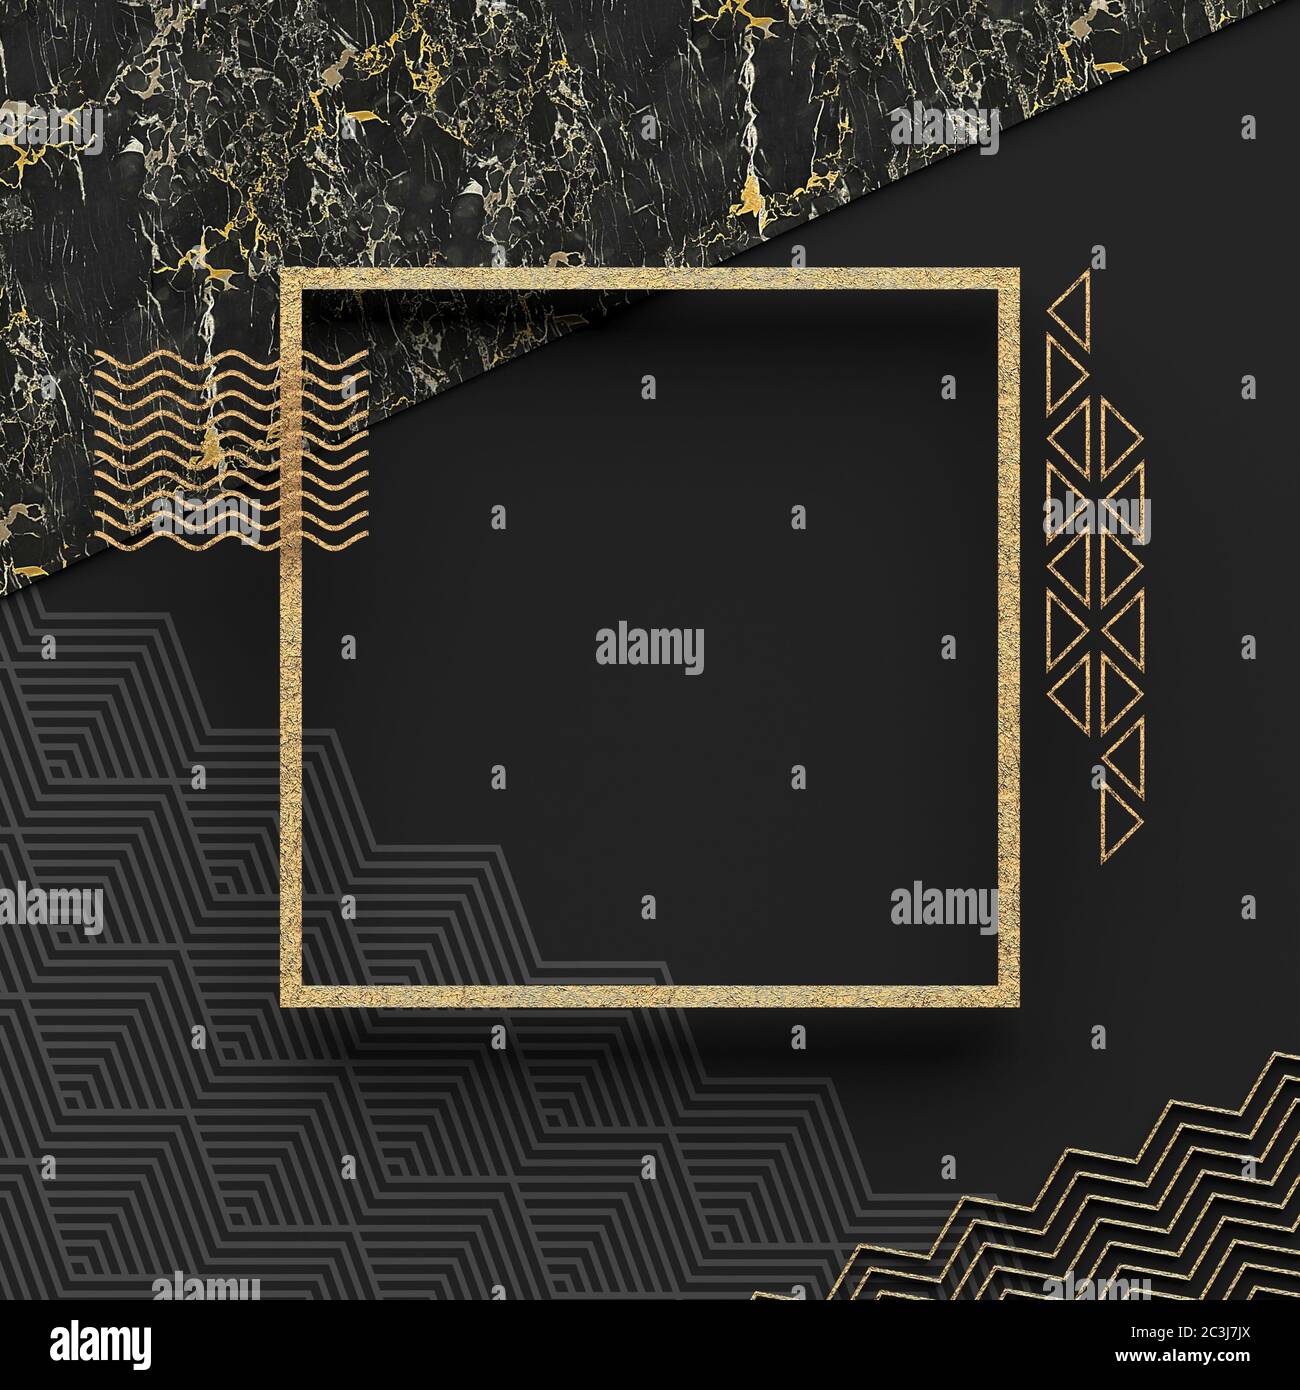 Cadre carré sur pierre de marbre avec fond sombre et éléments dorés texturés. Copier l'espace. Composition géométrique abstraite. Rendu 3D. Banque D'Images